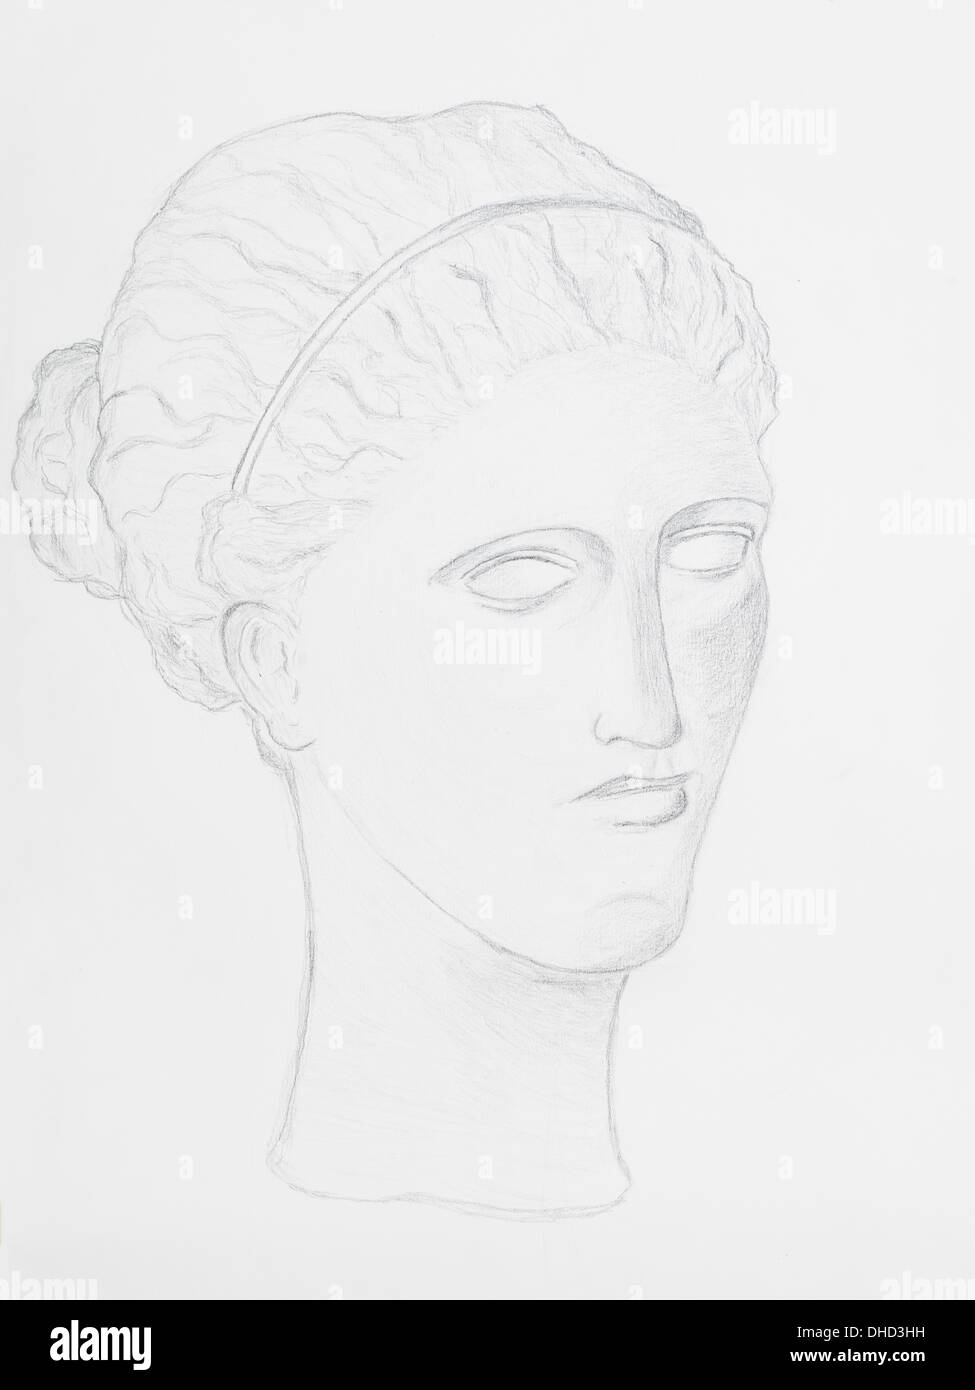 Portrait de femme dessin au crayon sur papier blanc Banque D'Images